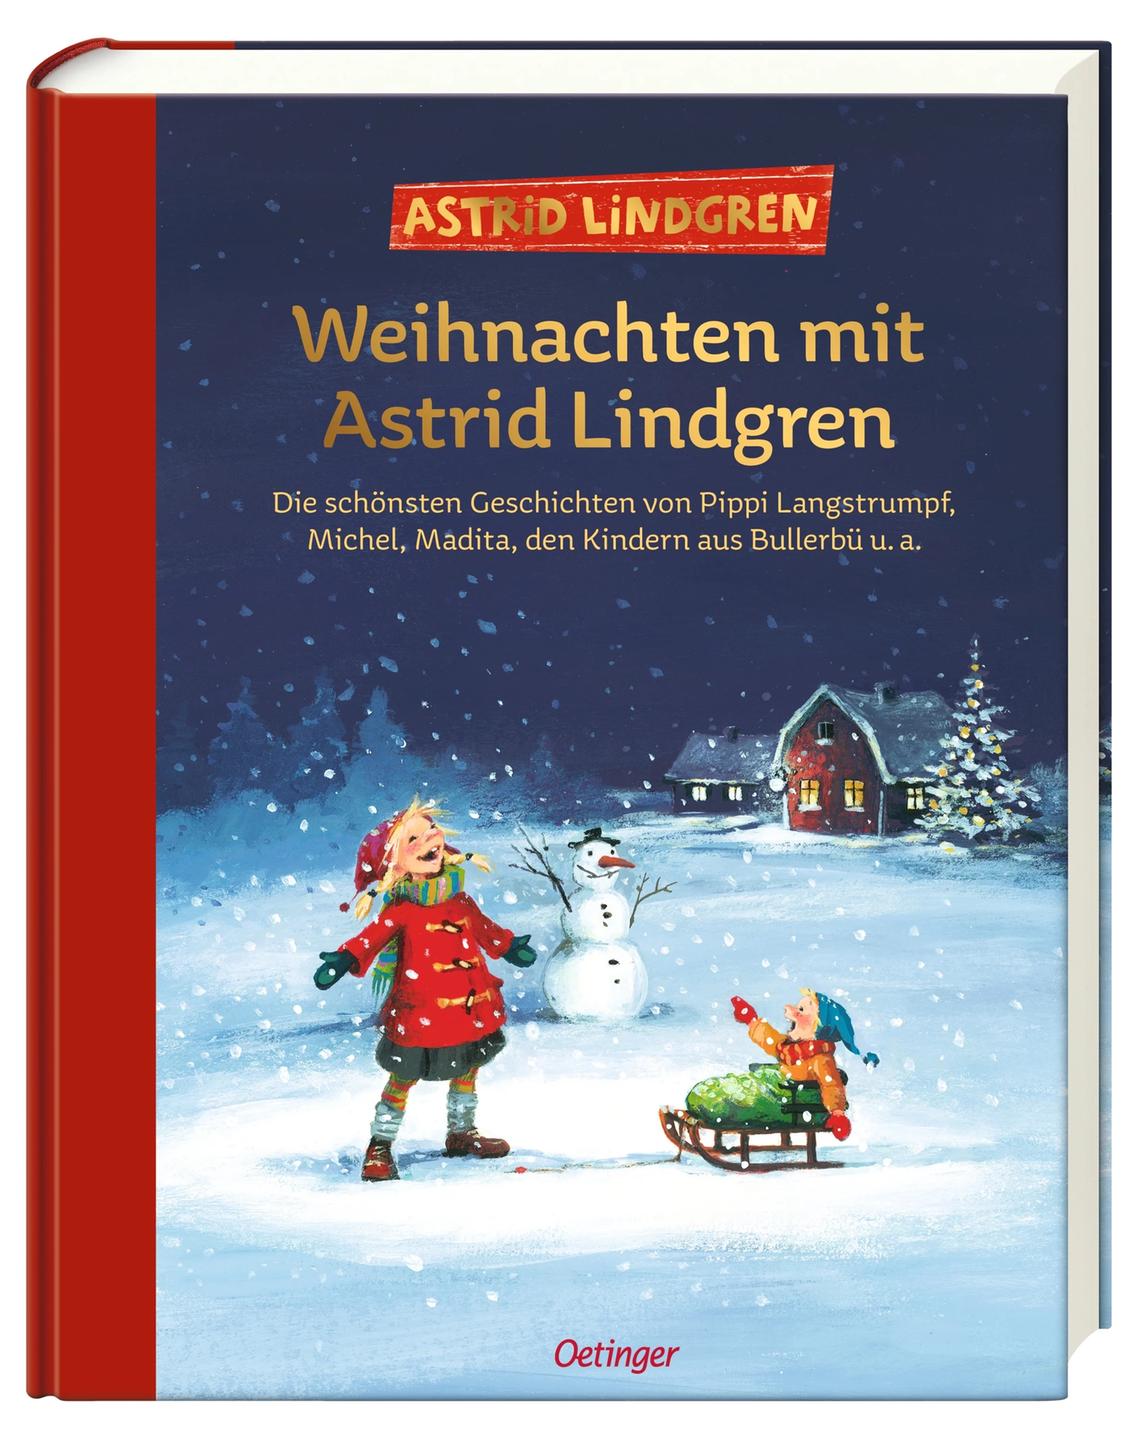 Buchcover, Illustration zweier Kinder im Schnee. Ein Kind sitzt auf dem Schlitten, ein Schneemann steht im Hintergrund